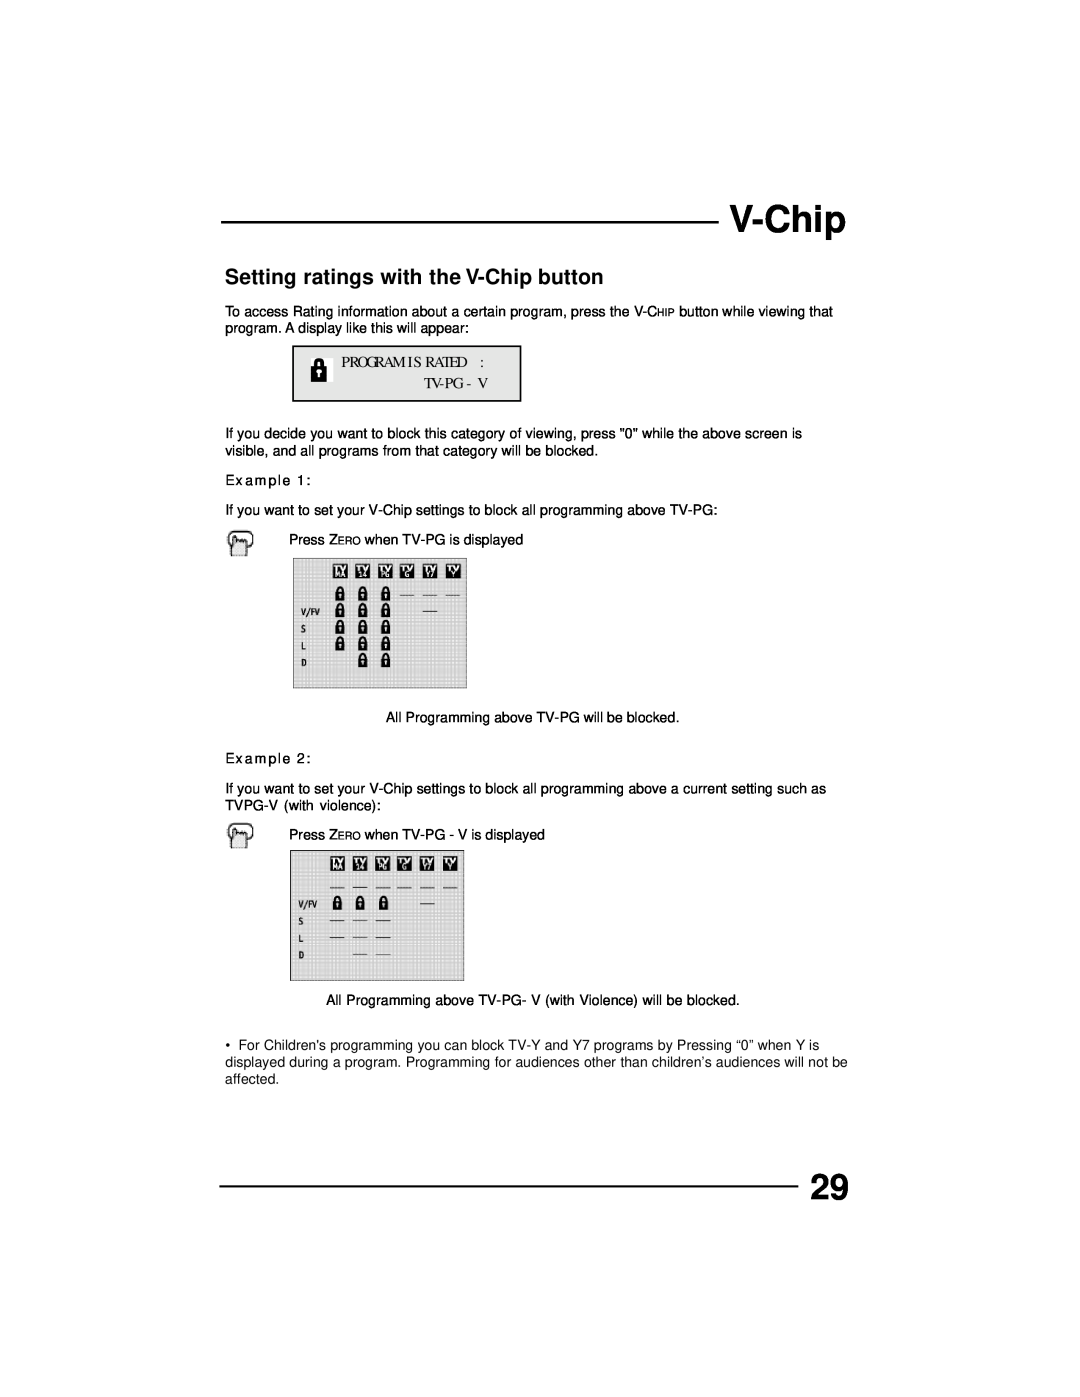 JVC AV 36D502, AV 36D202, AV 36D302, AV 32D302 manual Setting ratings with the V-Chip button, Program Is Rated Tv-Pg, Example 